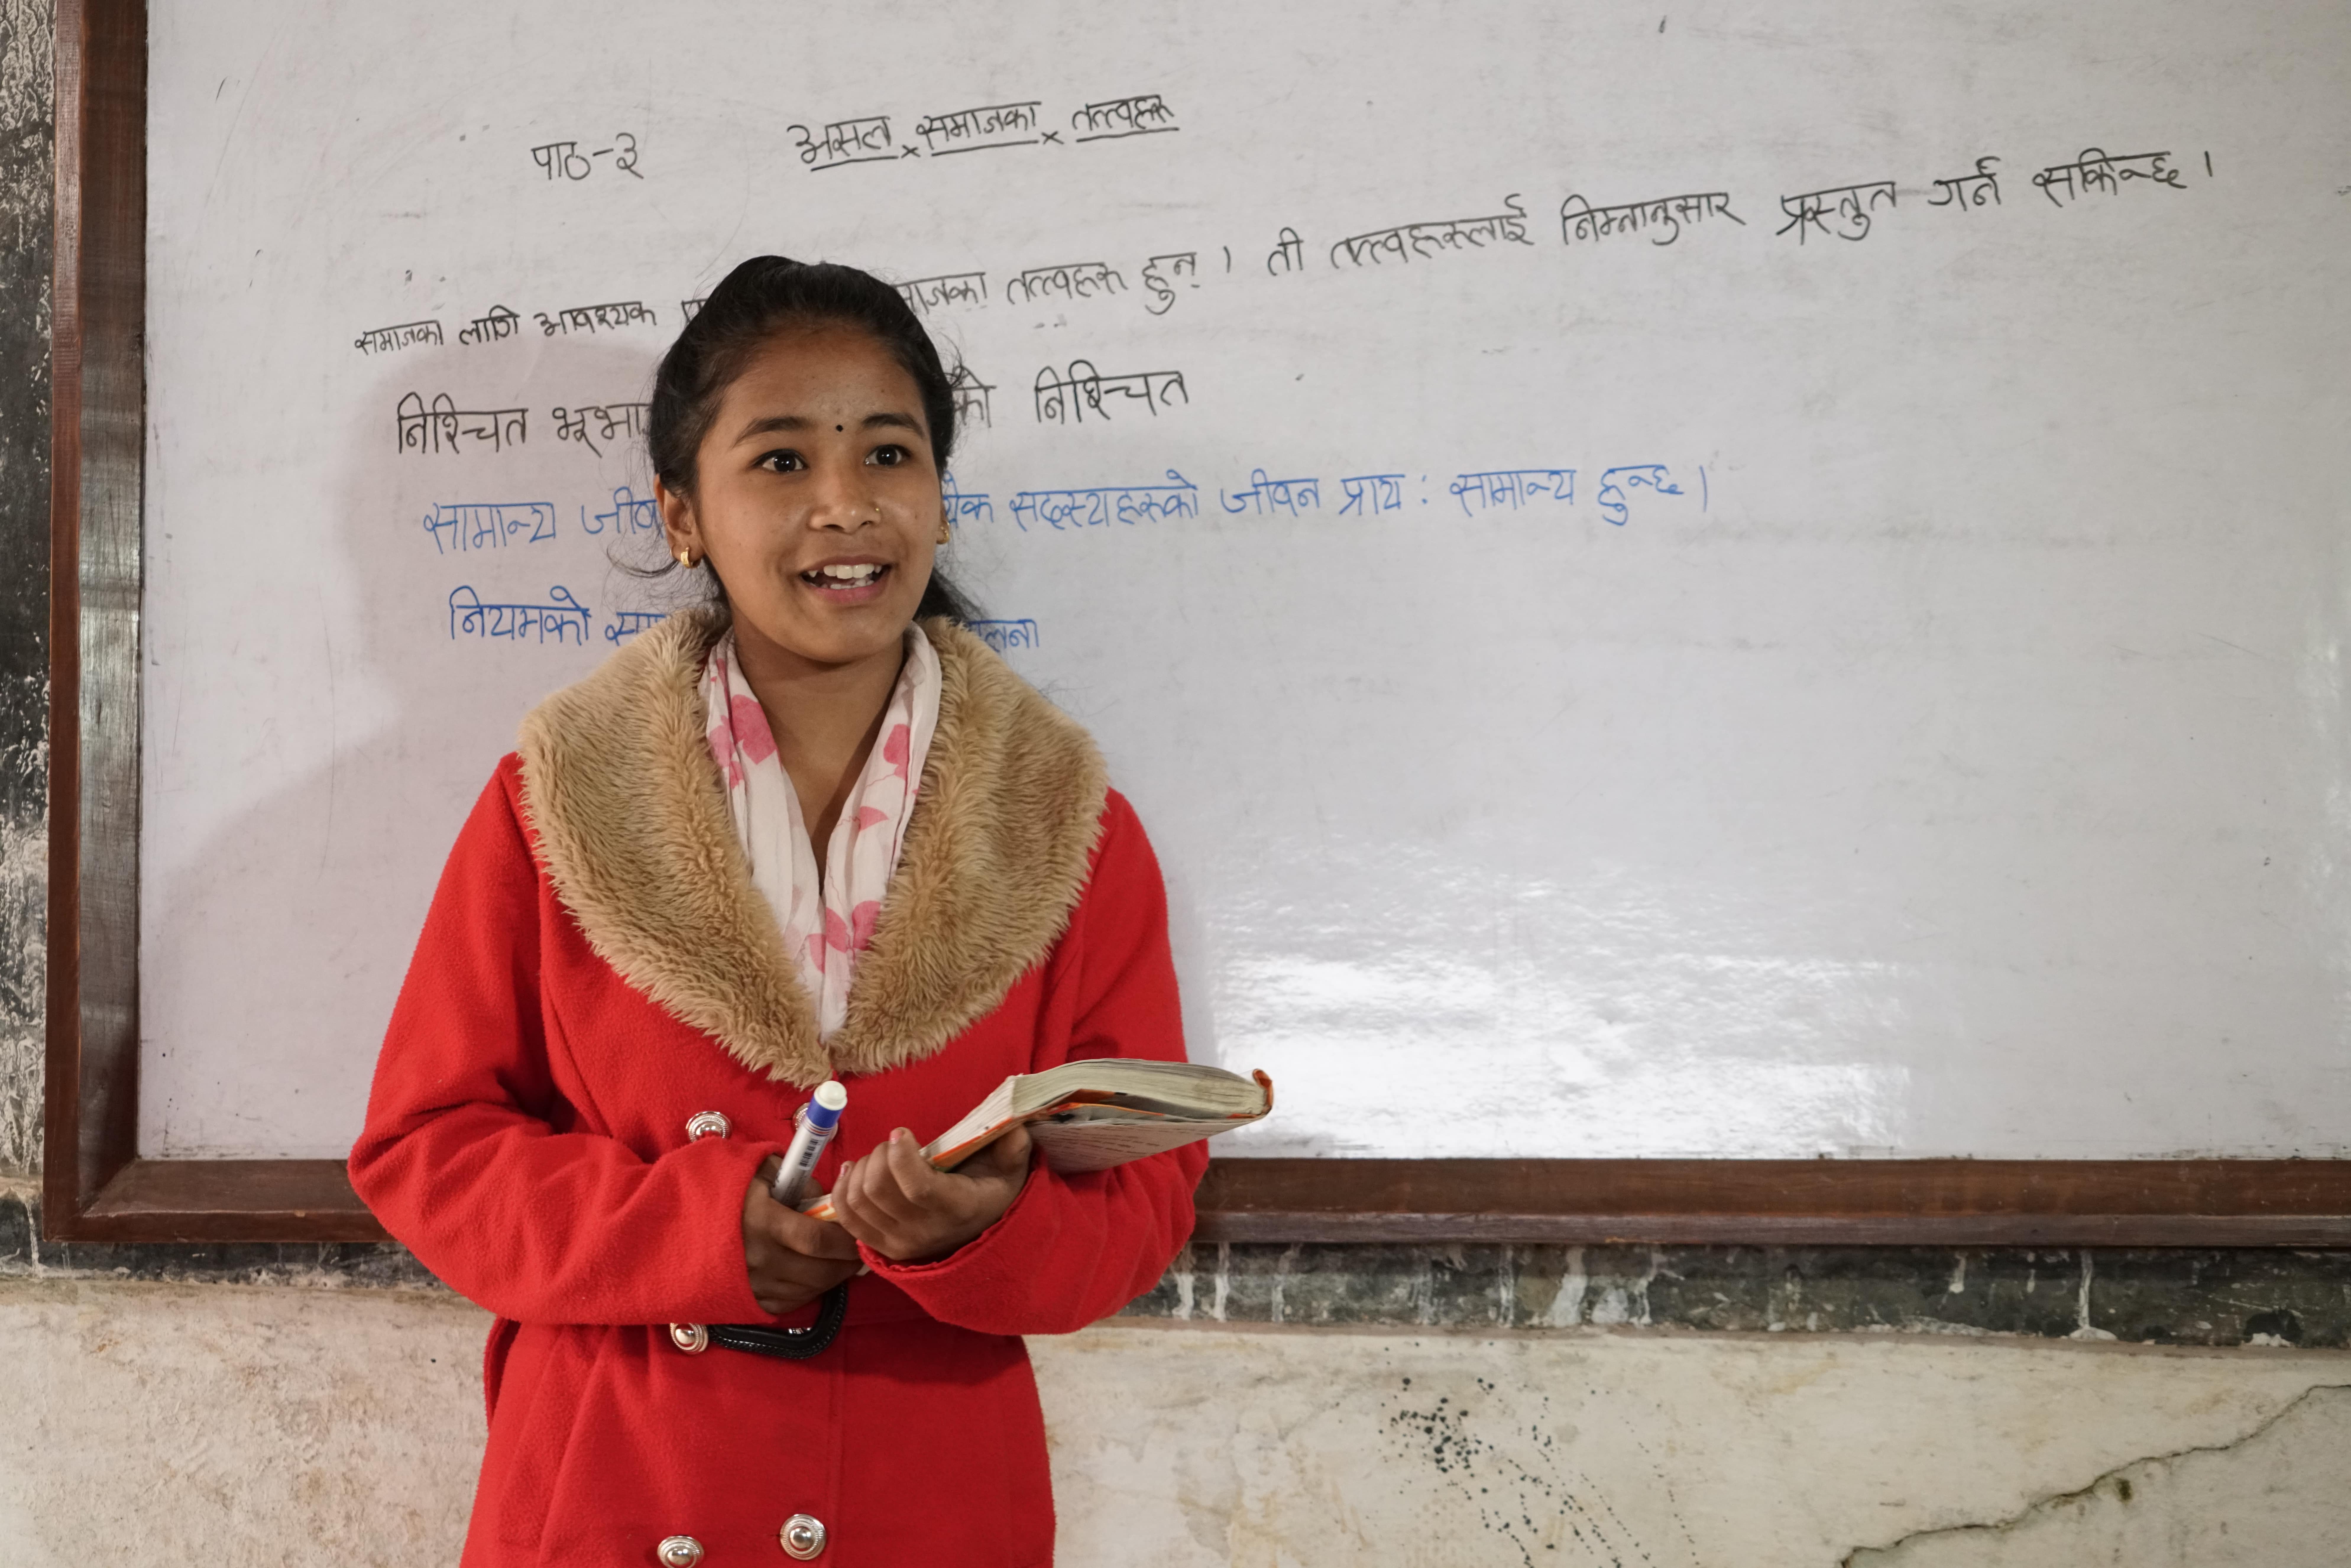 16岁的Mira梦想成为一名尼泊尔文老师。（摄影︰Tony Leung / 乐施会义务摄影师）